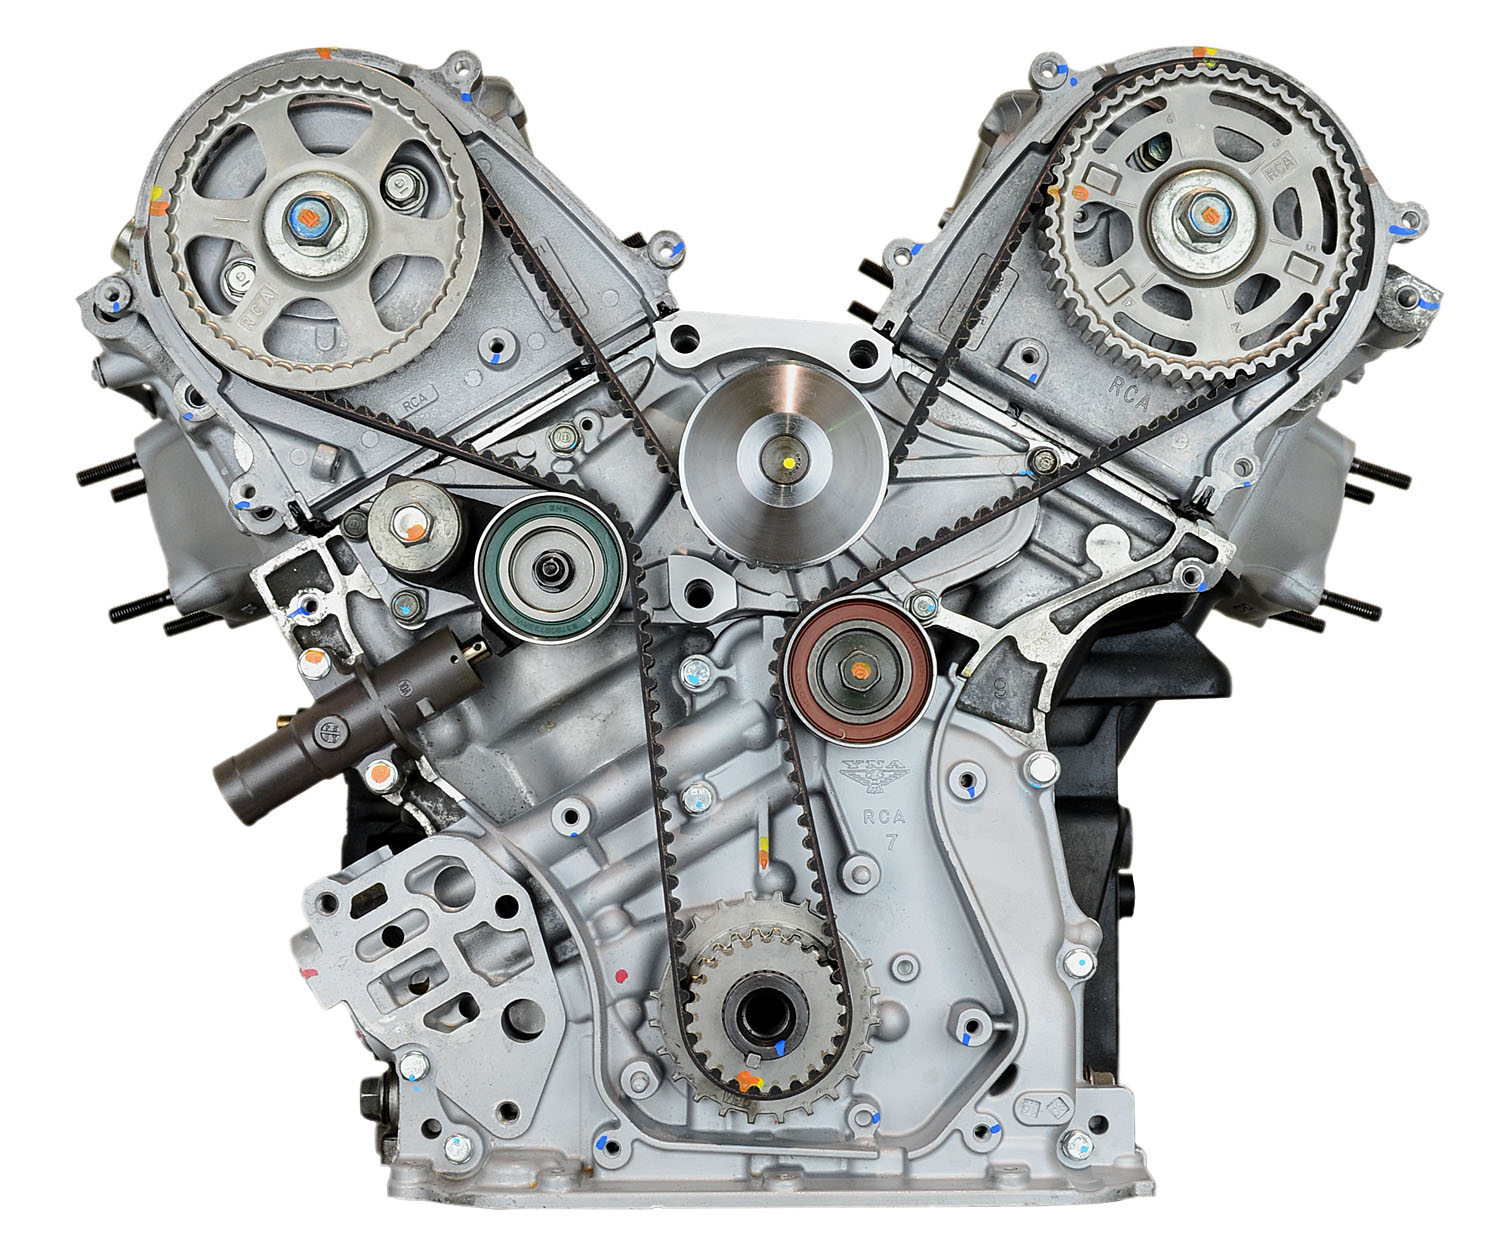 Honda J35A9 3.5L V6 Remanufactured Engine - 2006-2008